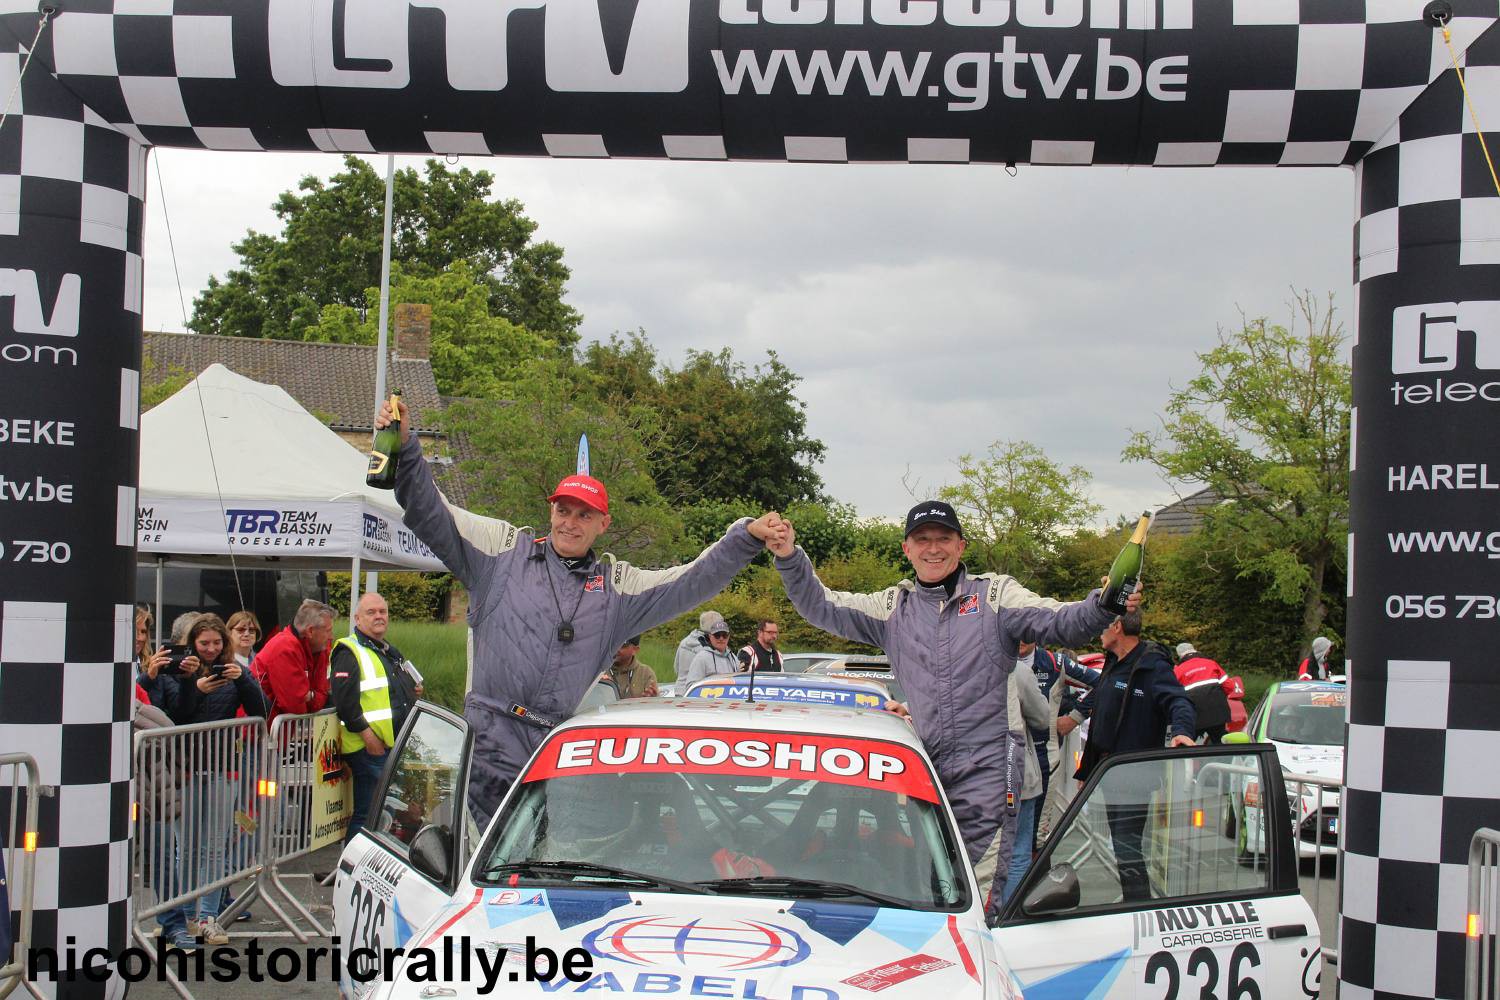 Verslag TBR Short Rally: Danny Kerckhof wint met ruime voorsprong in zijn M3 !